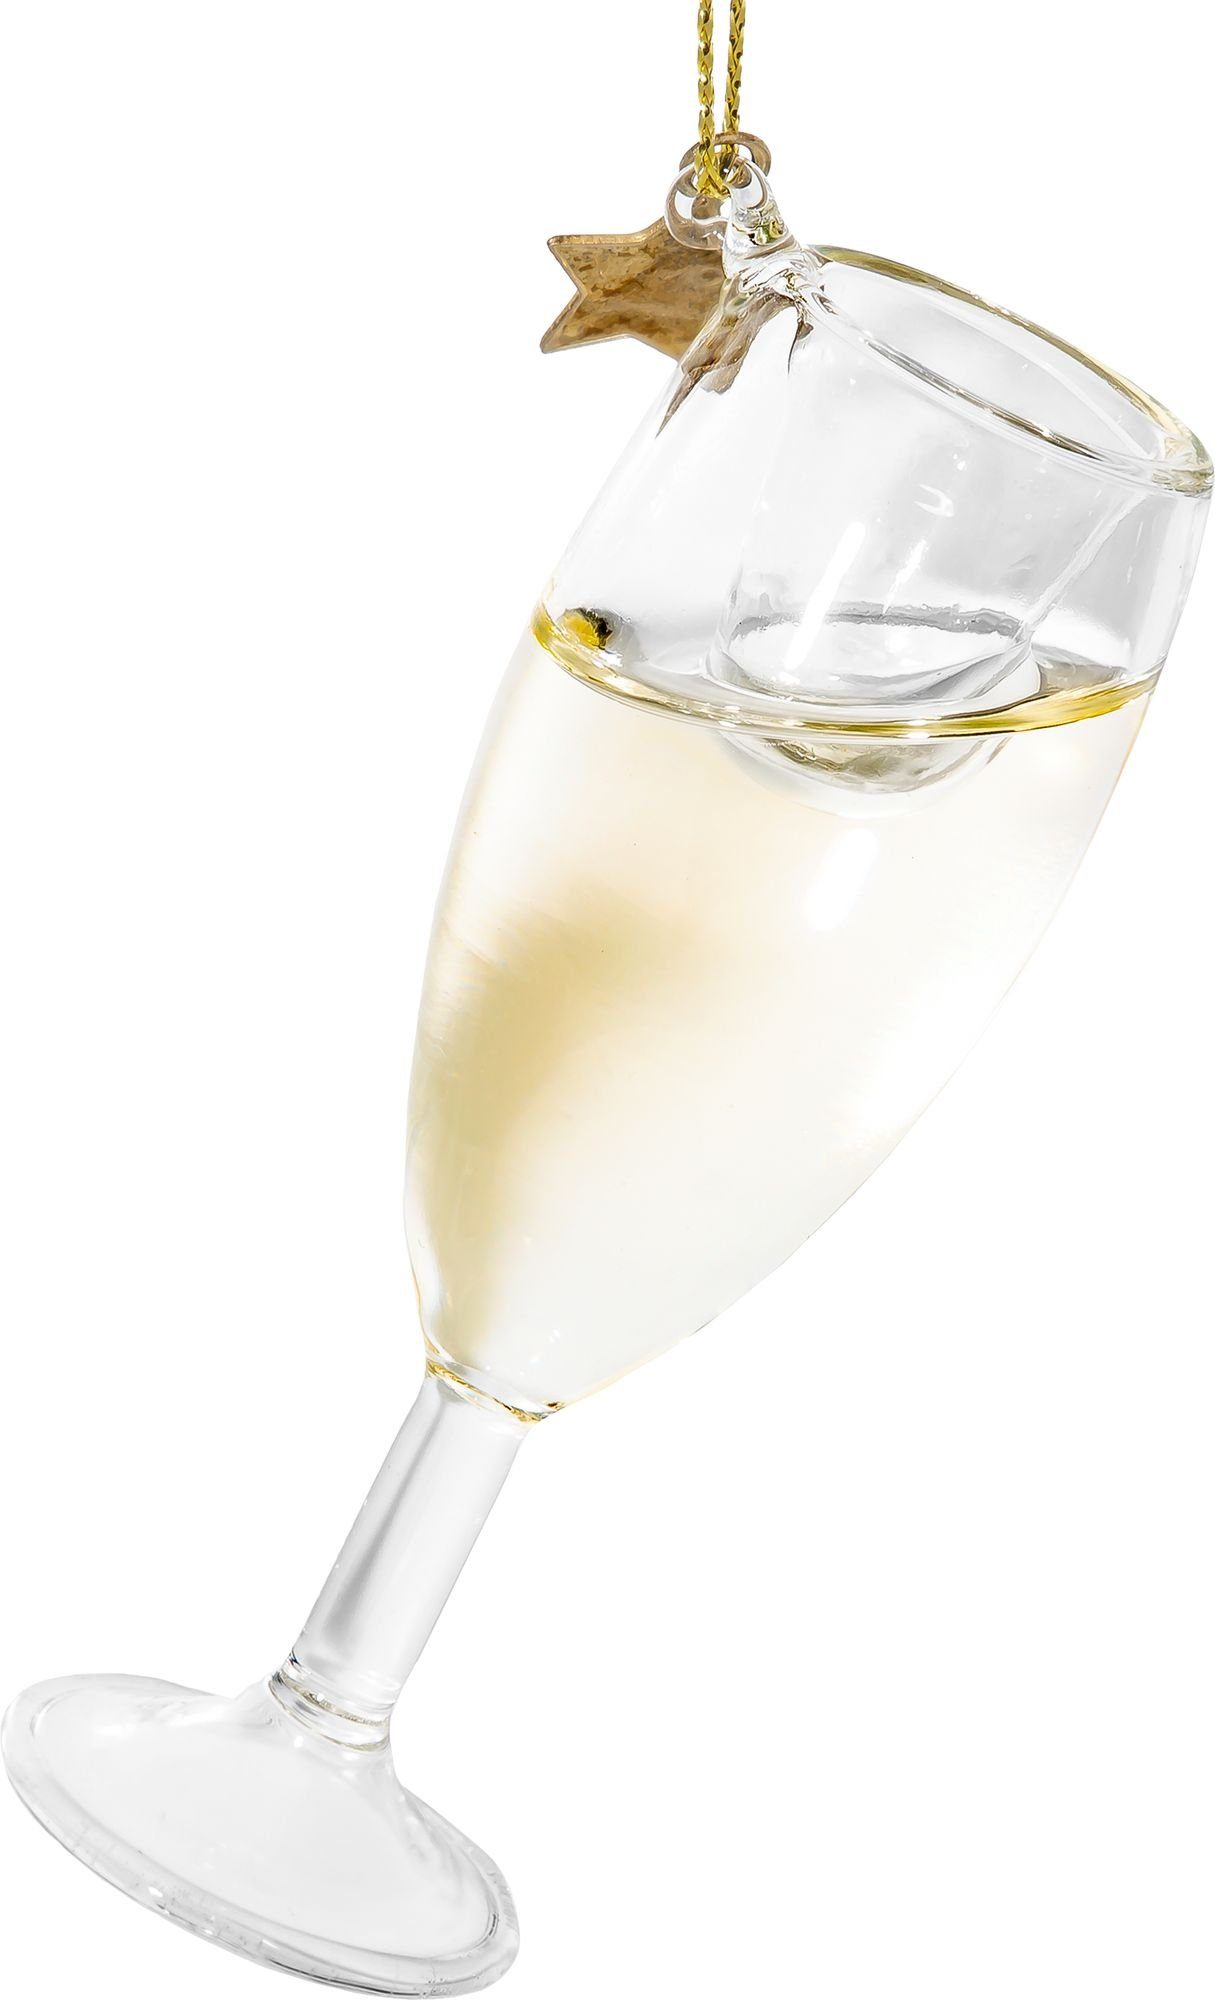 SIKORA Christbaumschmuck BS554 Champagner Glas Glas Figur Weihnachtsbaum Anhänger